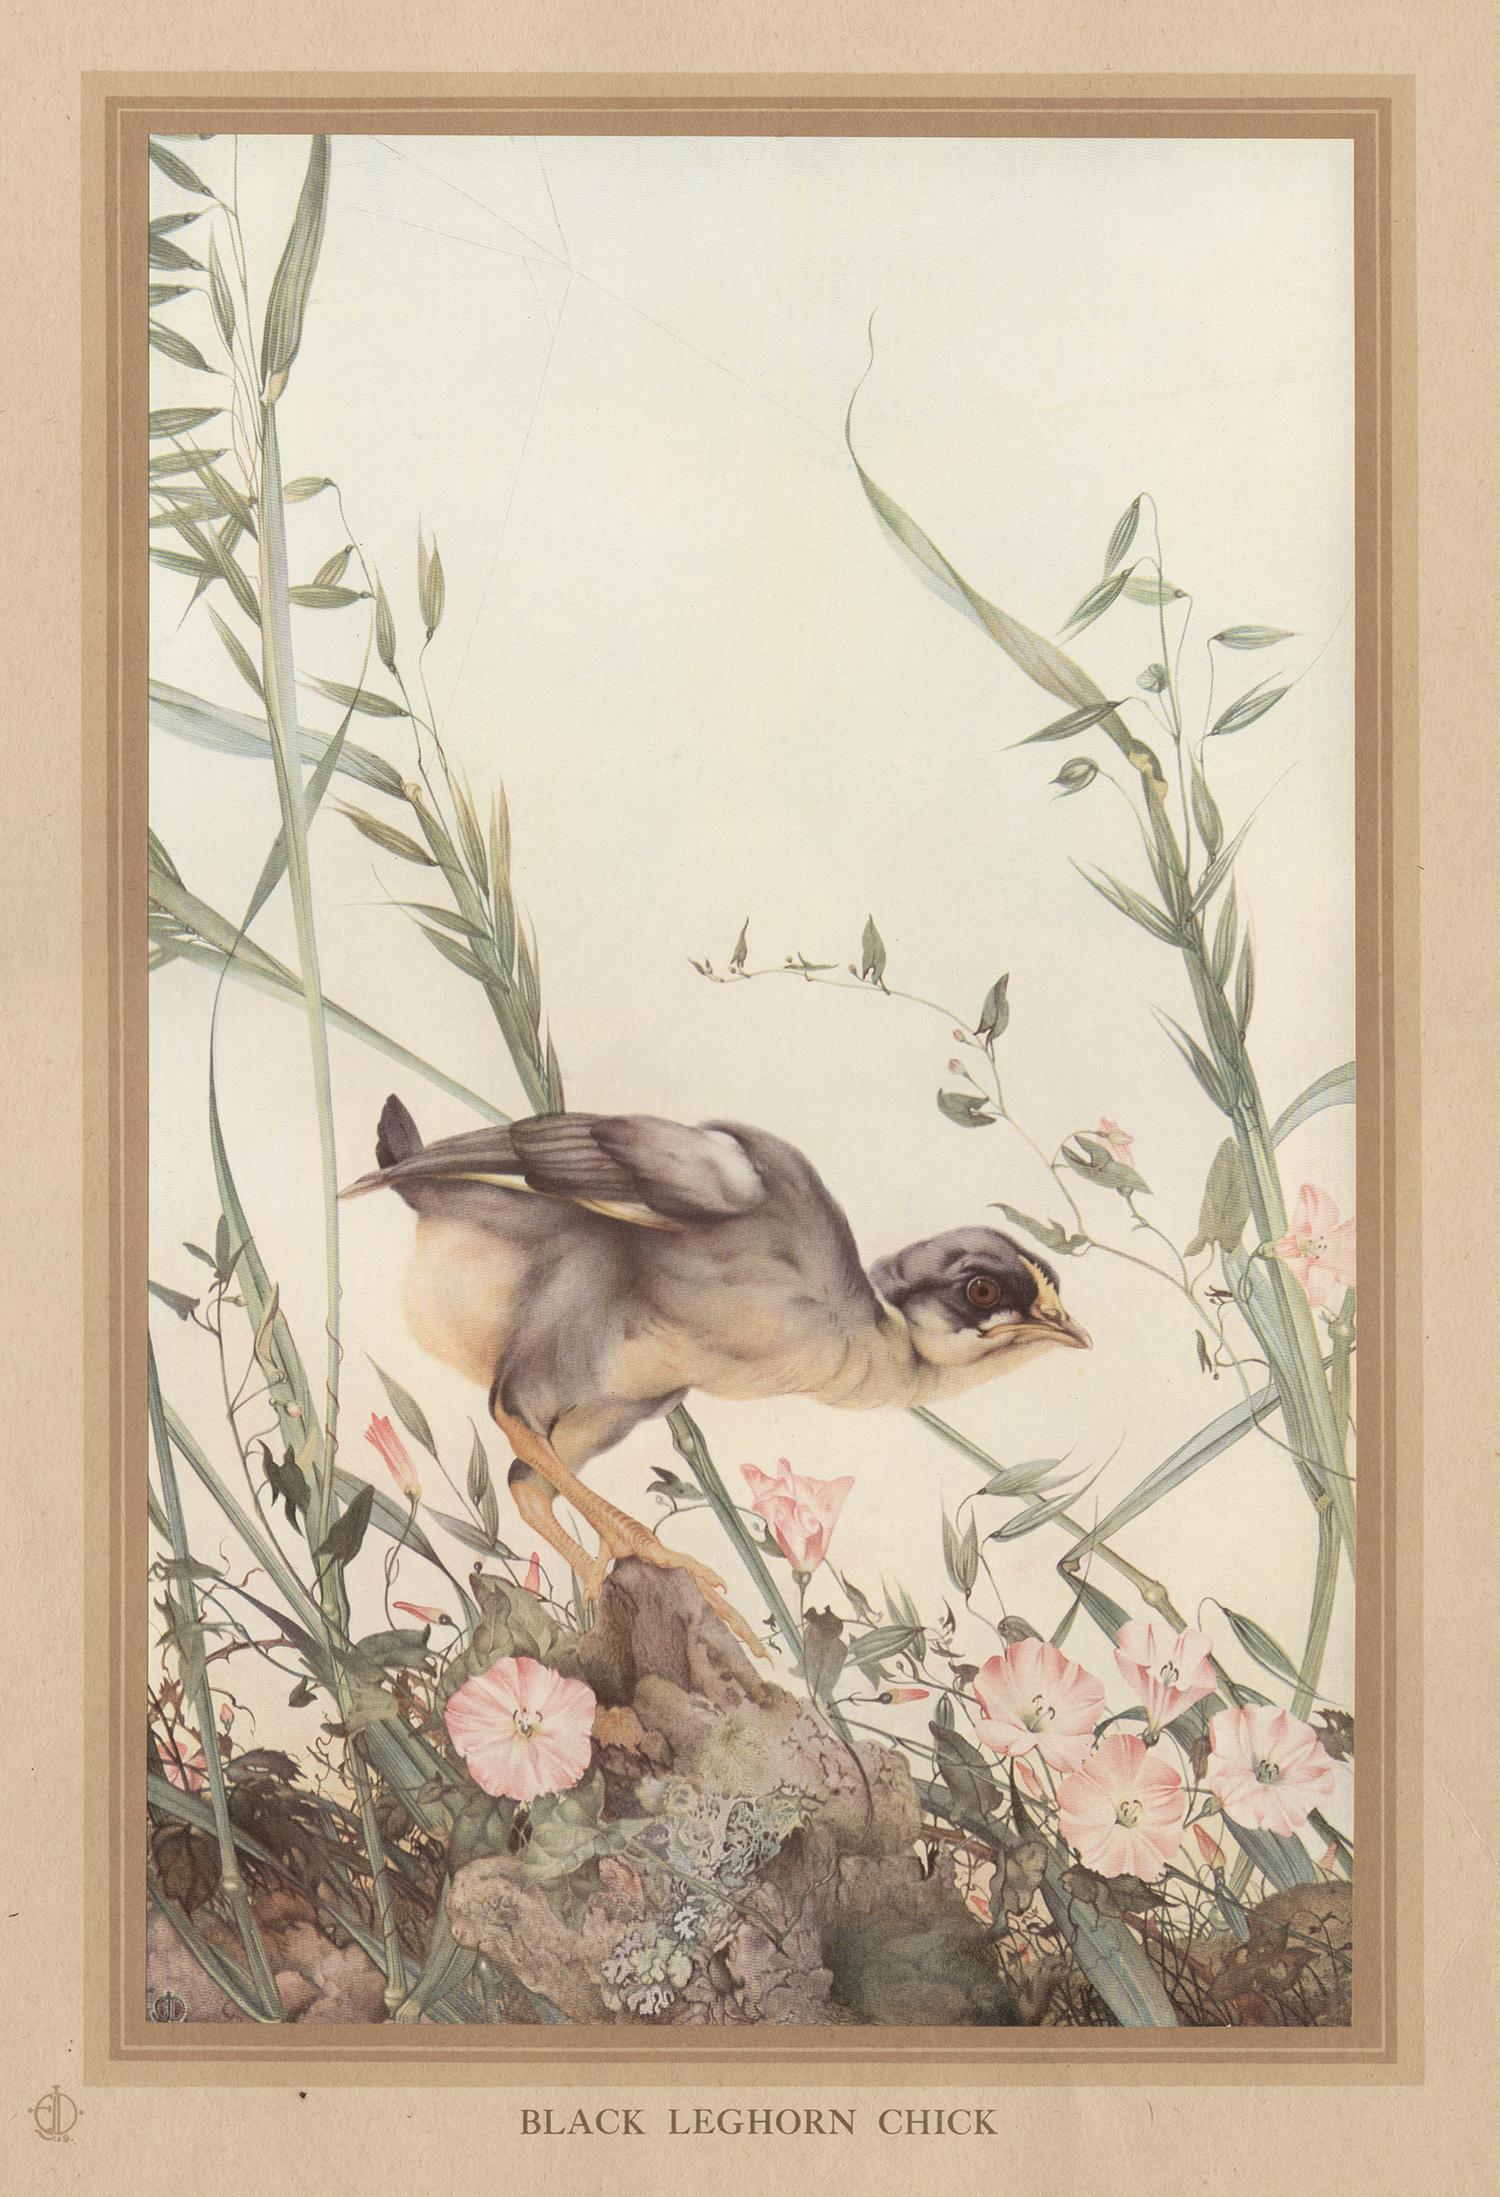 After Edward Detmold Animal Print - 'Black Leghorn Chick', English bird print after Edward Detmold, circa 1919